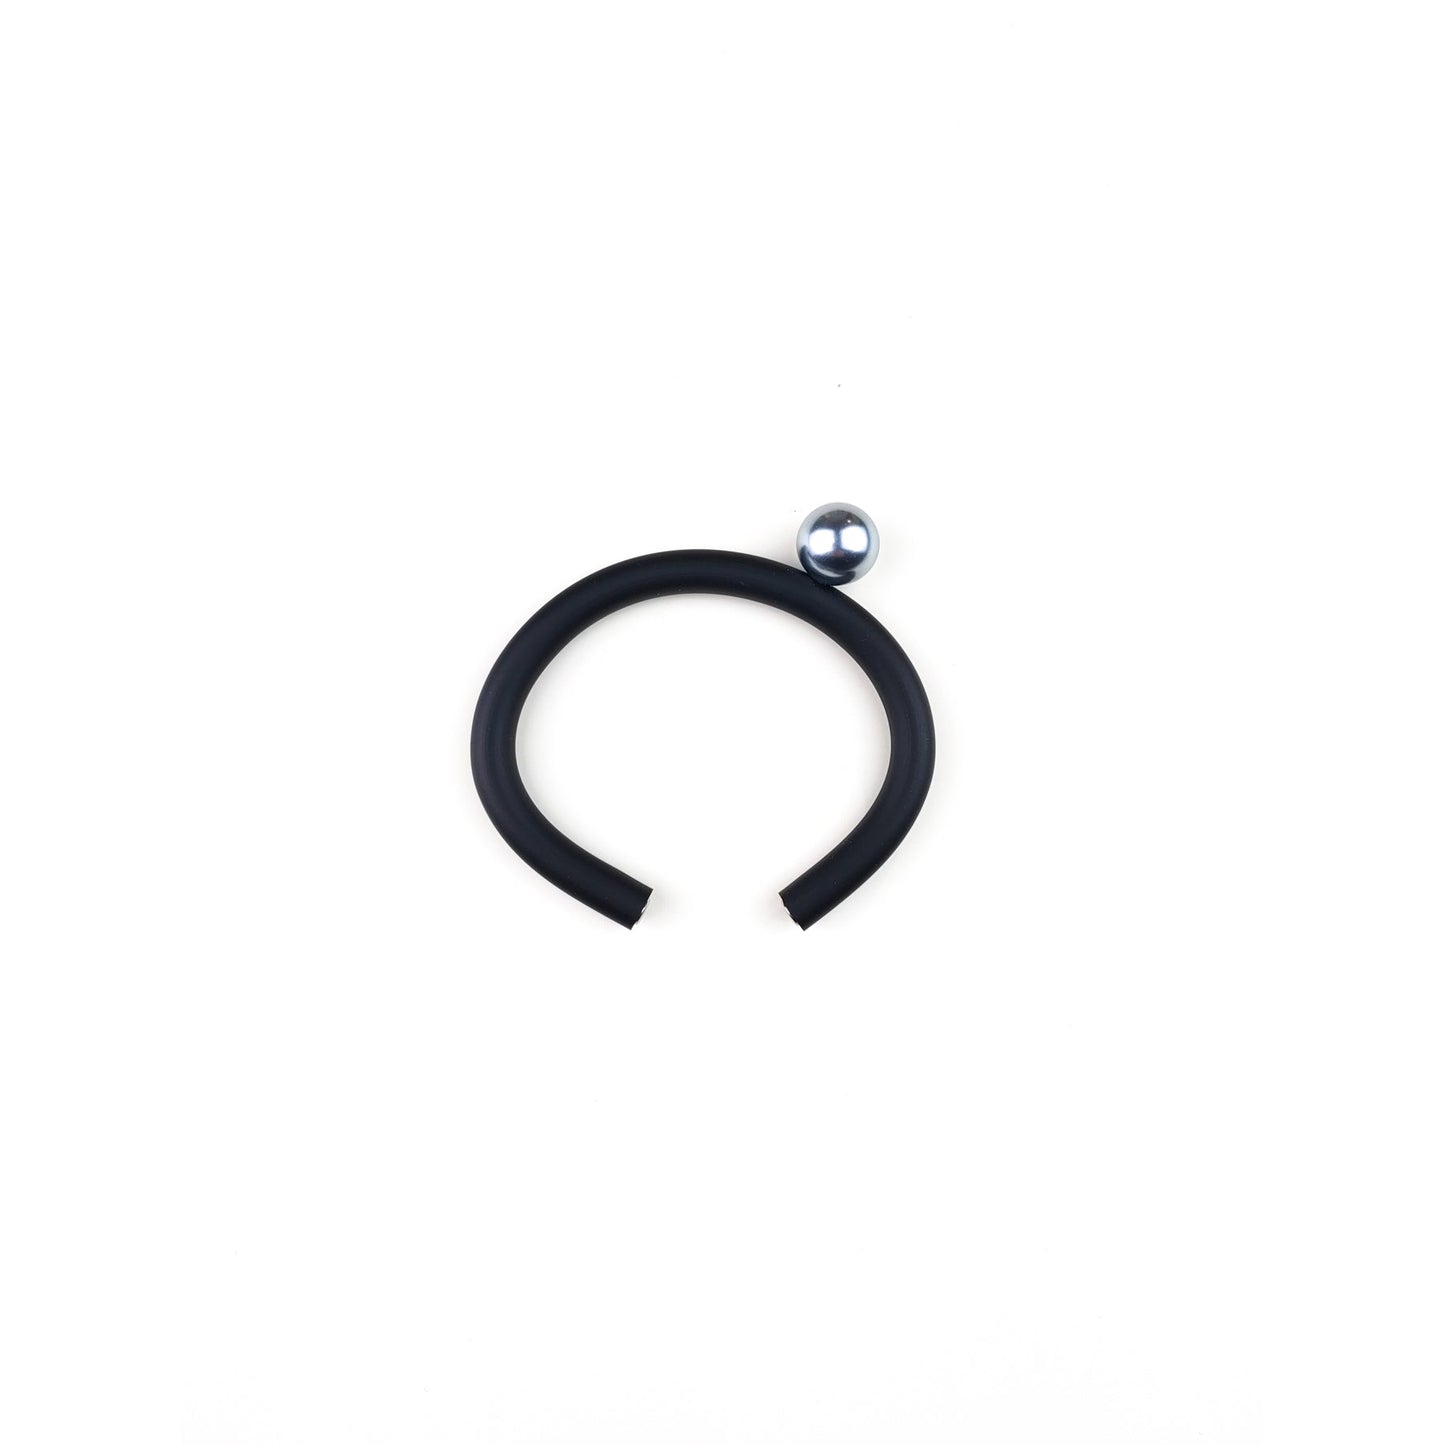 BILICO bracelet - black / silver pearl